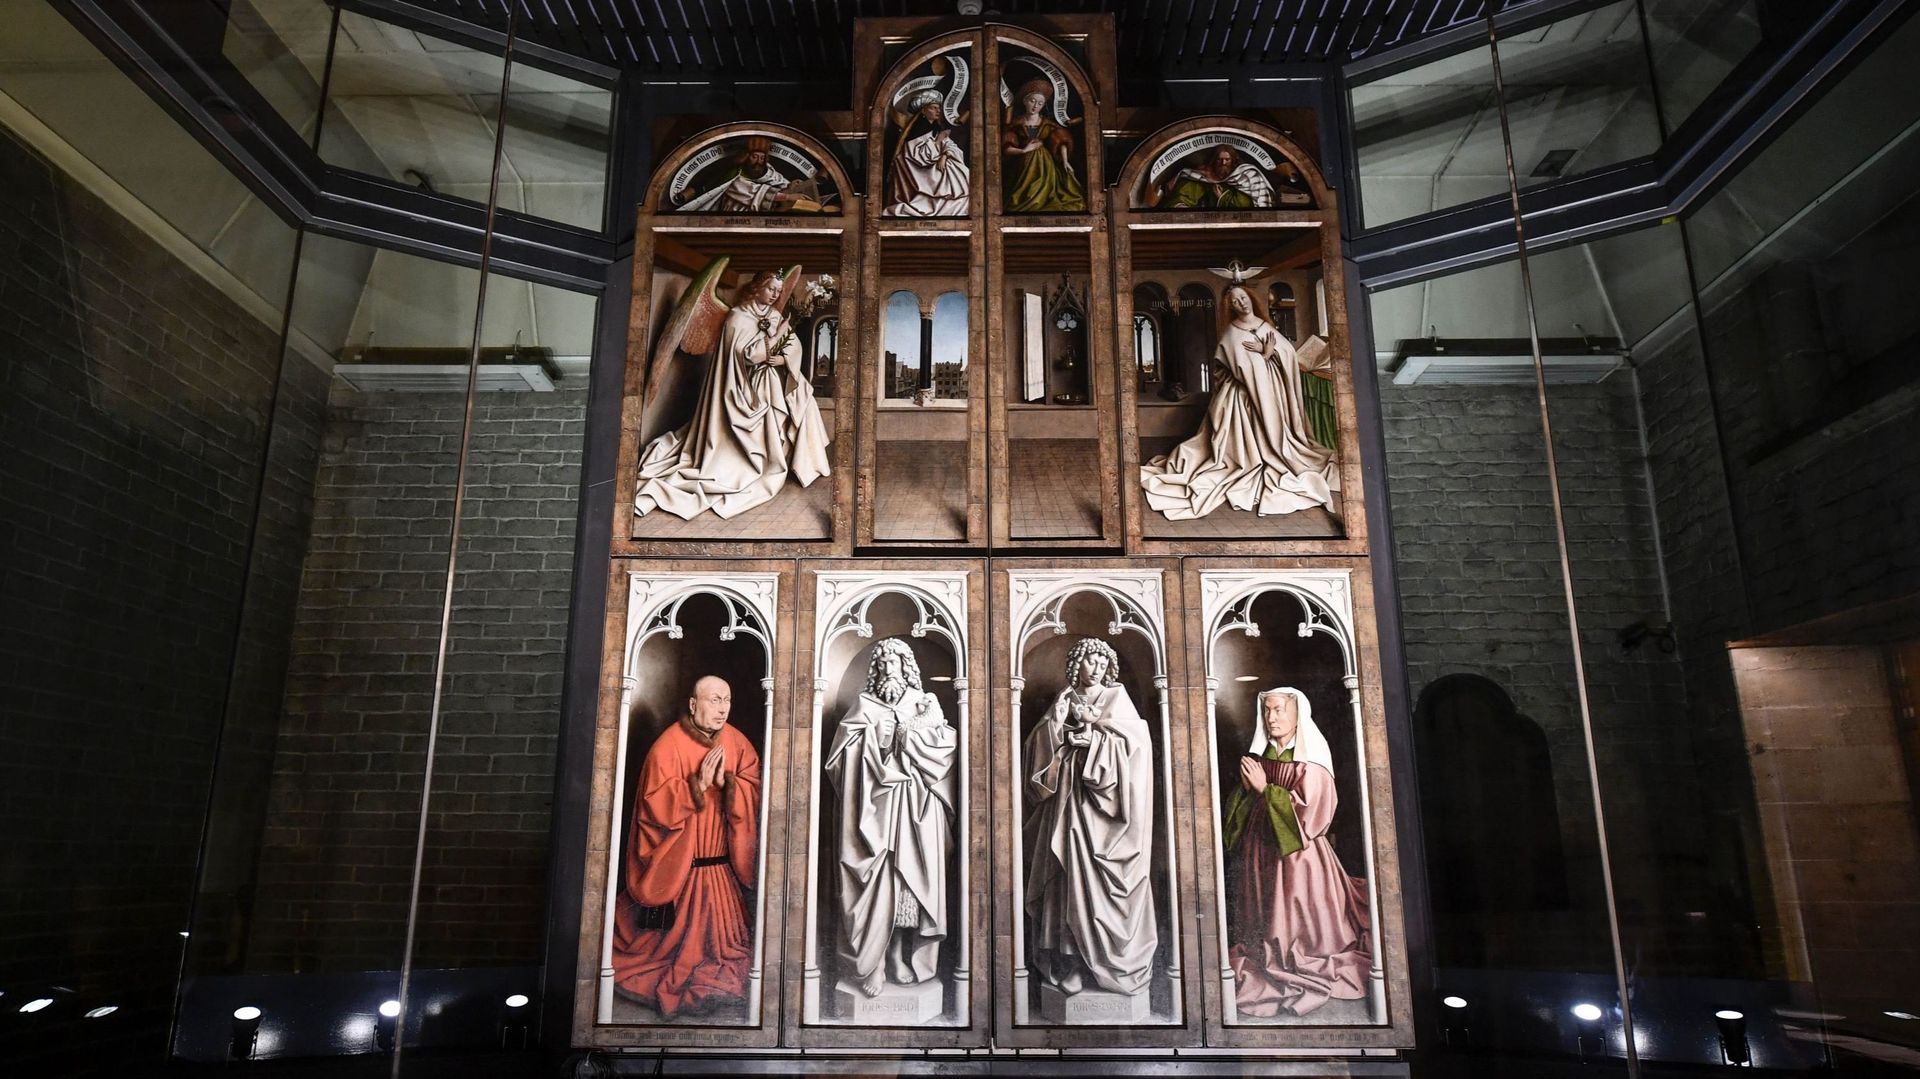 La restauration de "l'Adoration de l'agneau" fait chatoyer les couleurs des frères van Eyck 